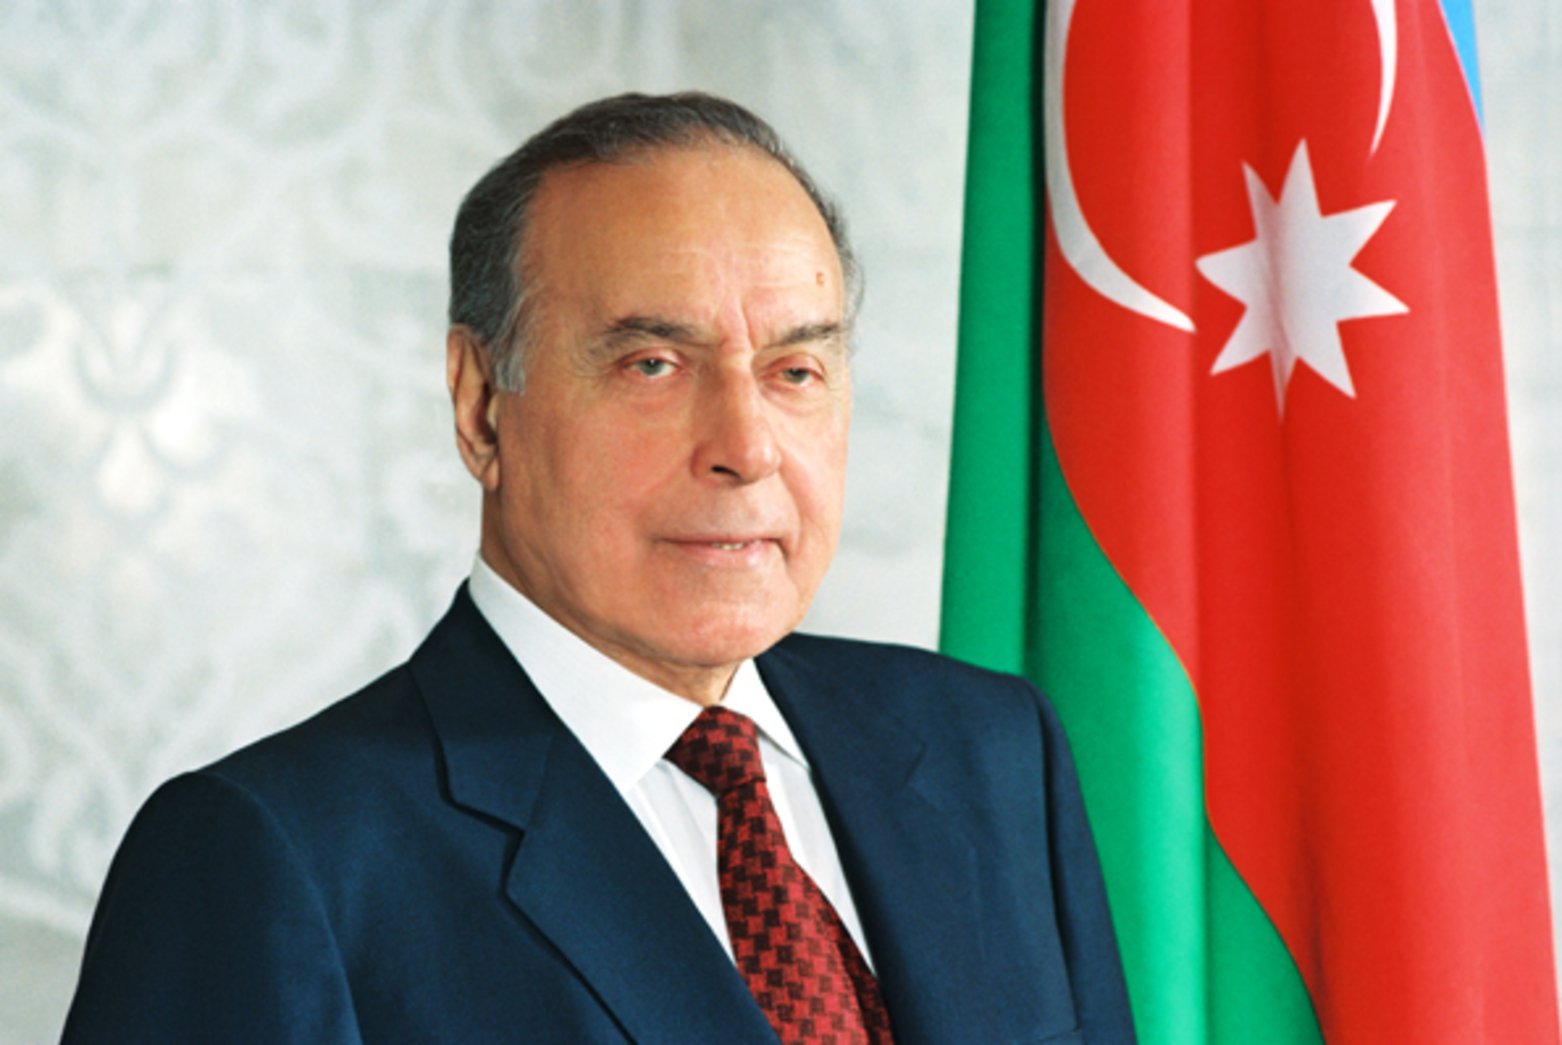 Azerbaijan plans to create "100th anniversary of Heydar Aliyev" jubilee medal